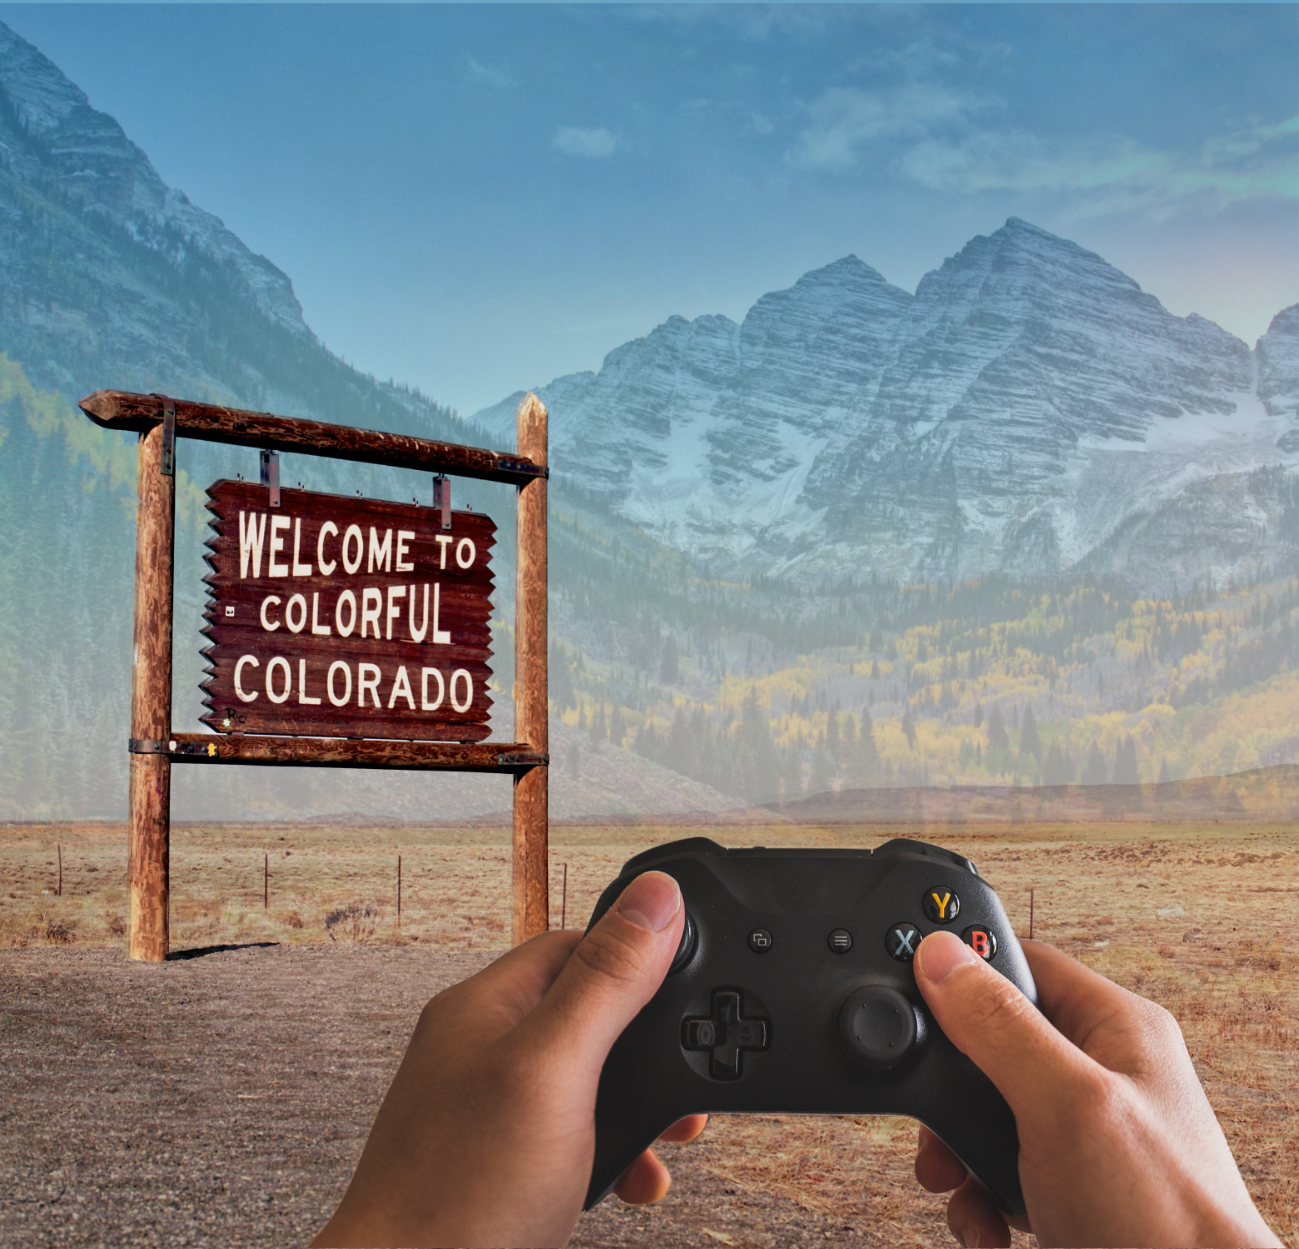 Colorado Video games